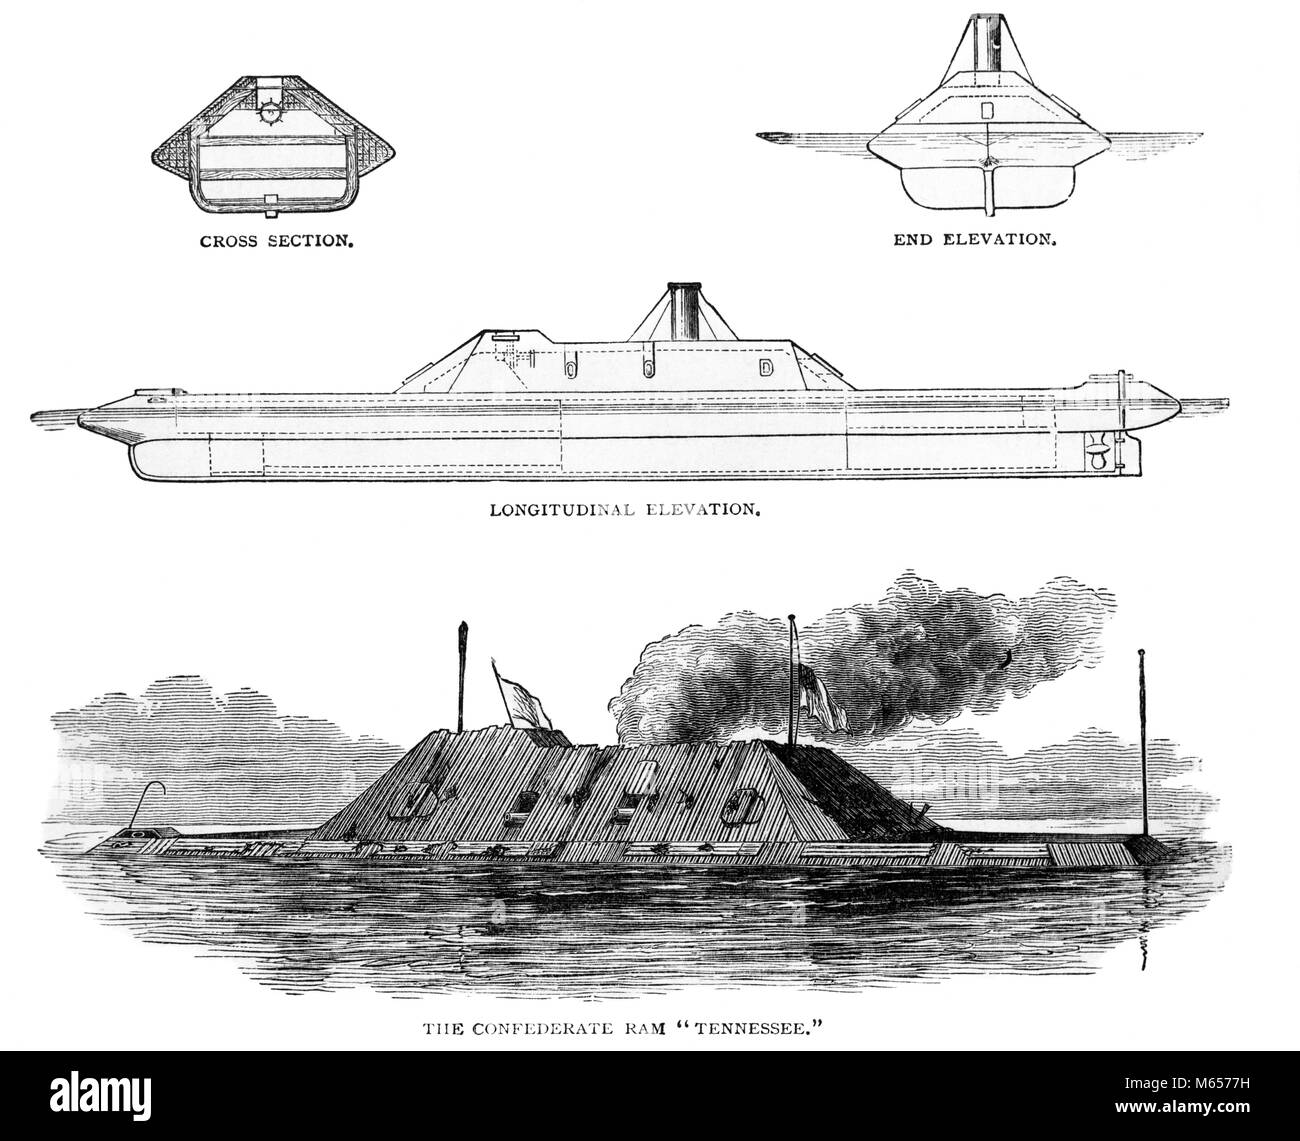 1860s GUERRA CIVILE AMERICANA CONFEDERATO IRONCLAD navale di RAM la Tennessee varie viste - h9844 HAR001 HARS RAM schematiche viste degli schemi Foto Stock